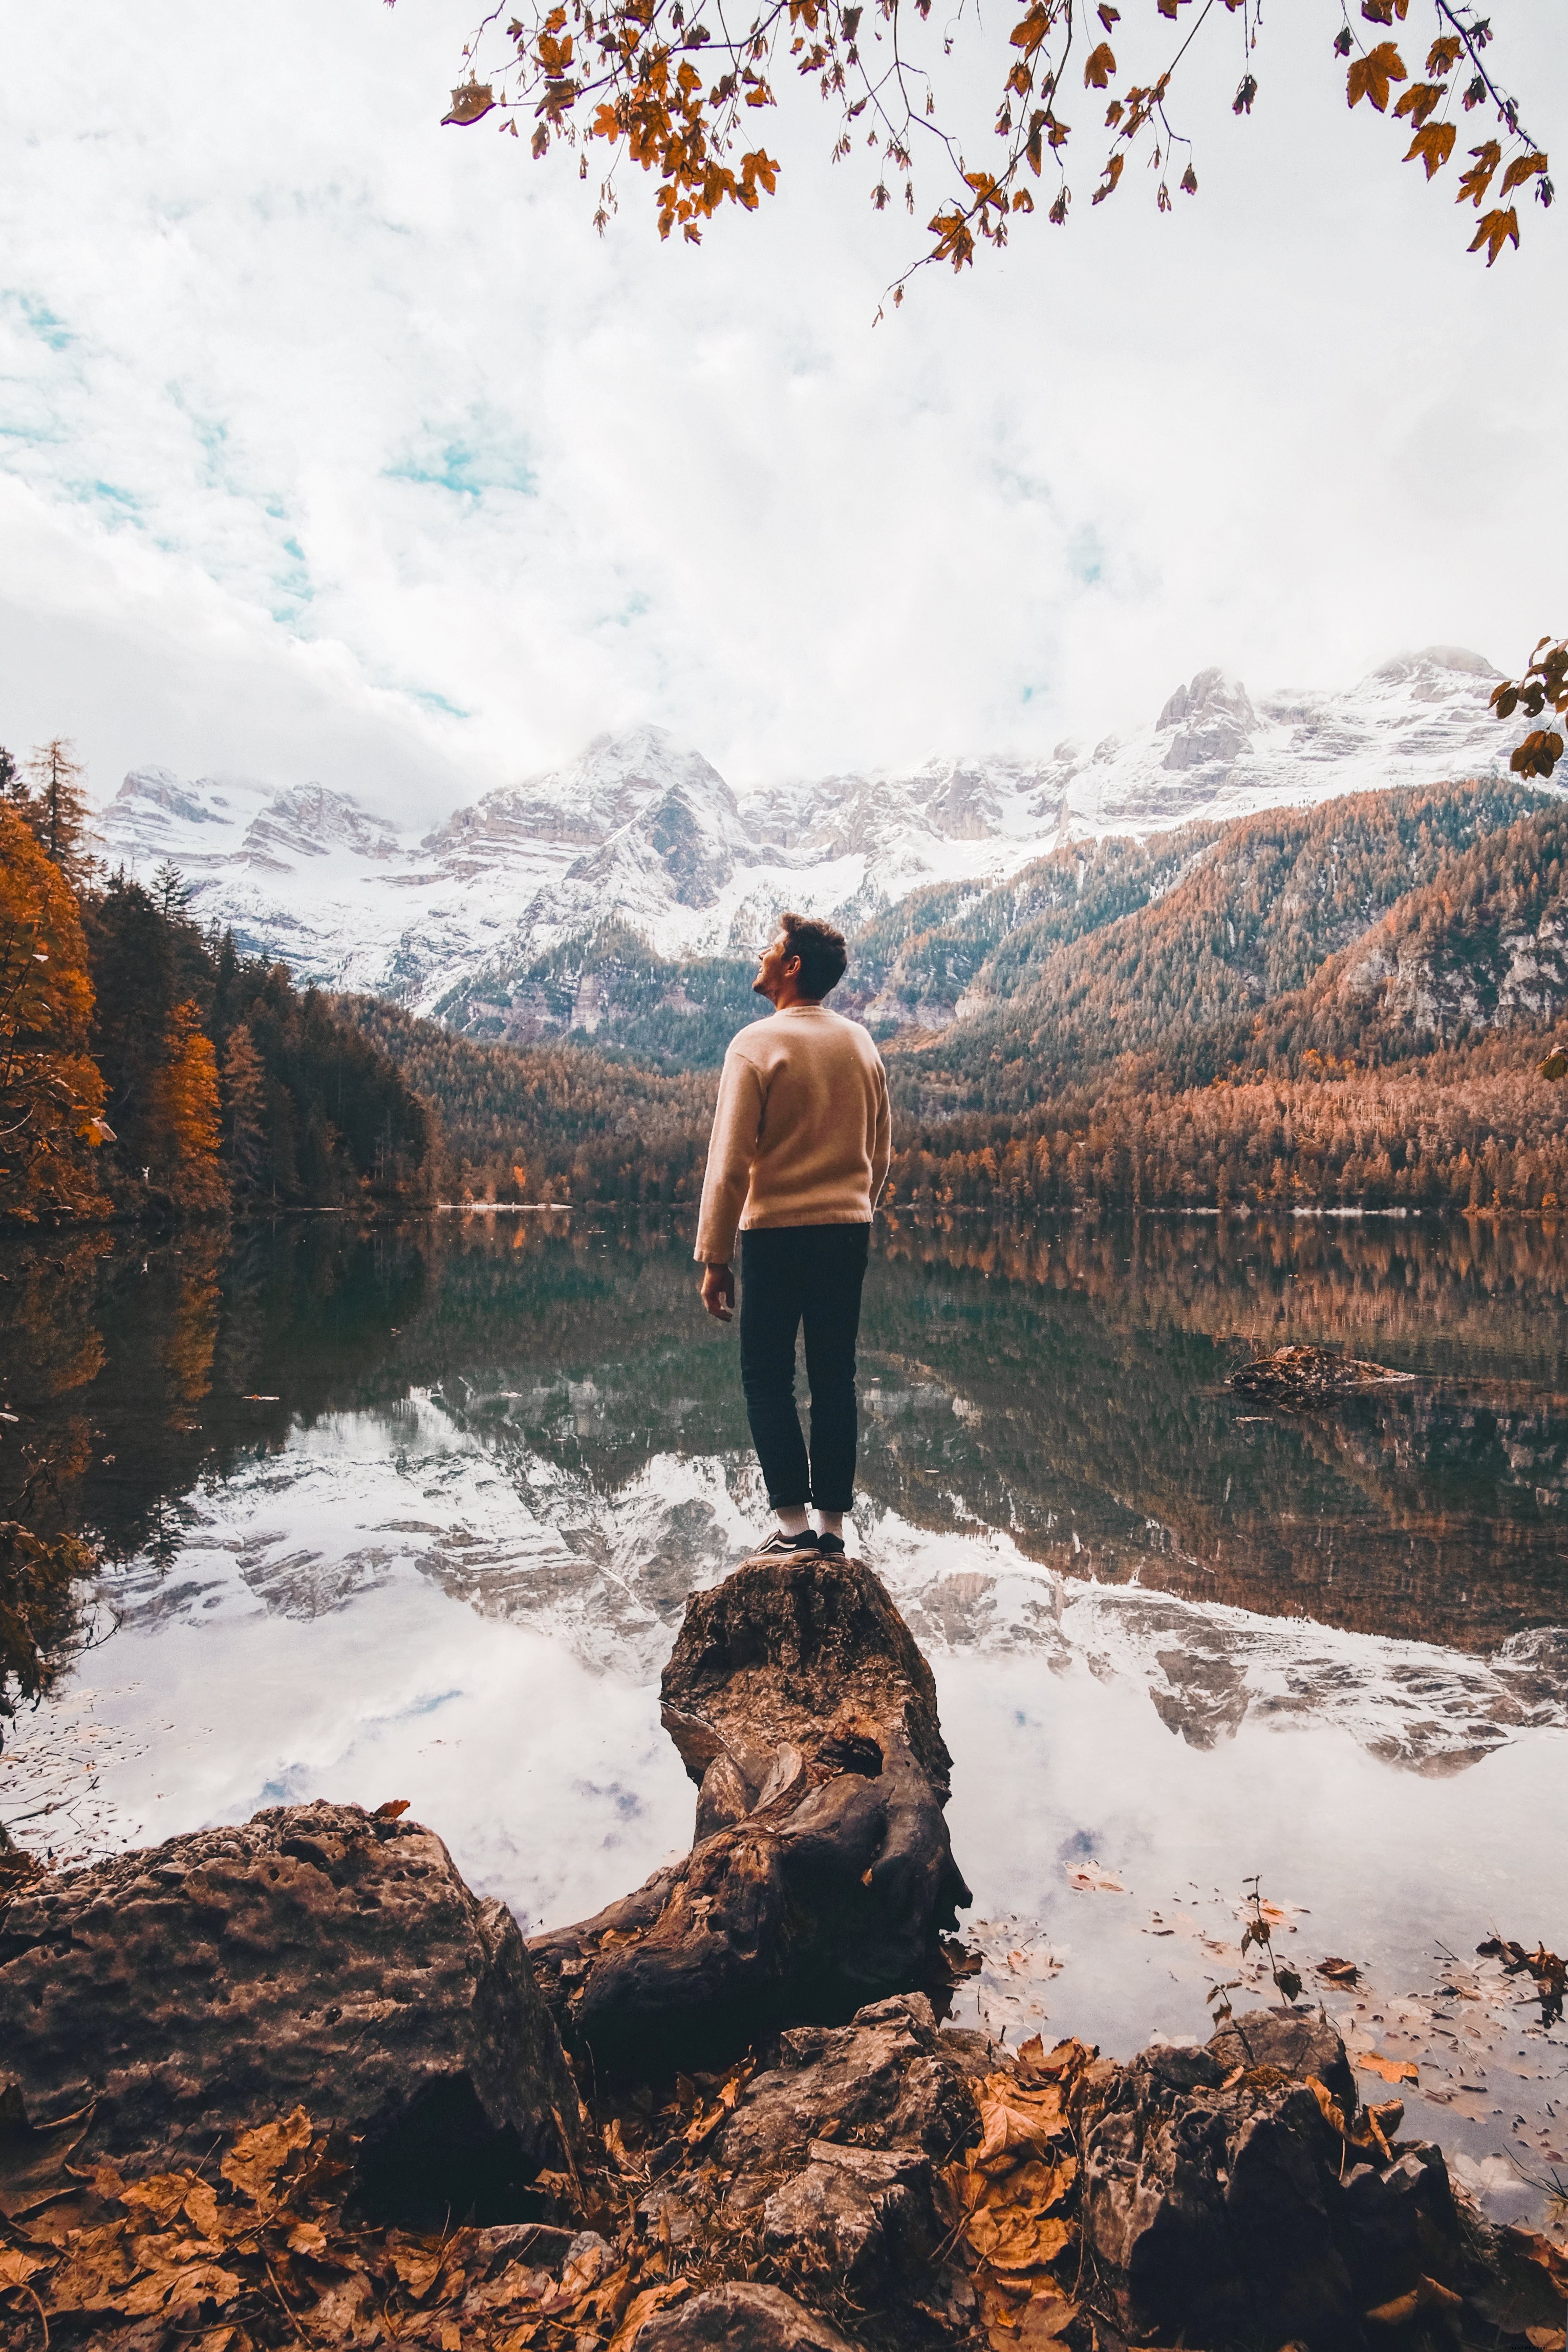 Persona mira hacia las montañas blancas en la foto de otoño